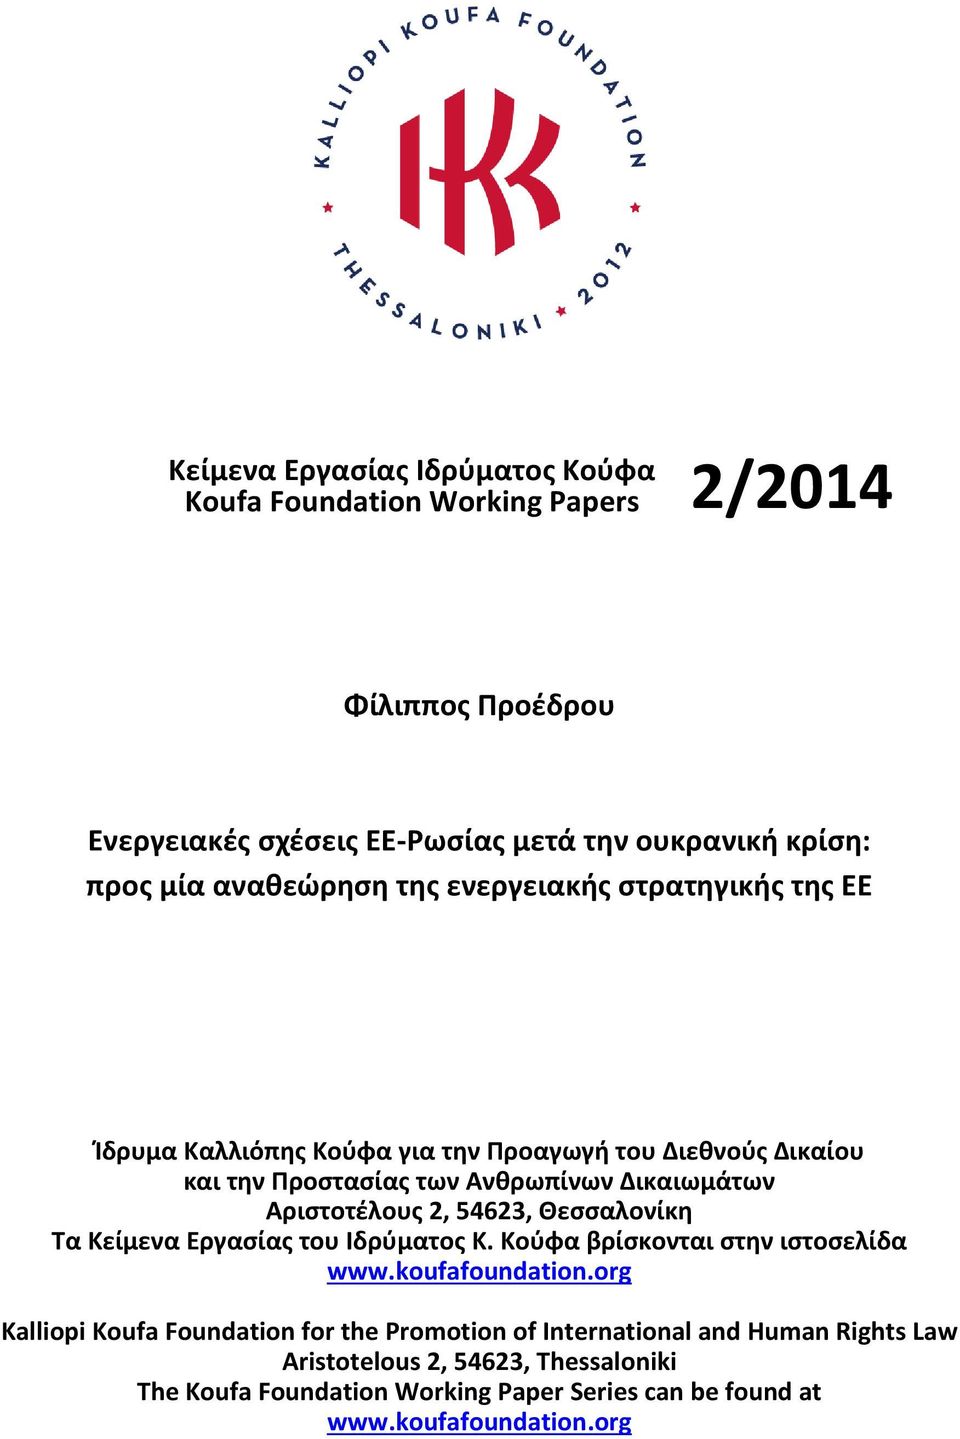 Αριστοτέλους 2, 54623, Θεσσαλονίκη Τα Κείμενα Εργασίας του Ιδρύματος Κ. Κούφα βρίσκονται στην ιστοσελίδα www.koufafoundation.